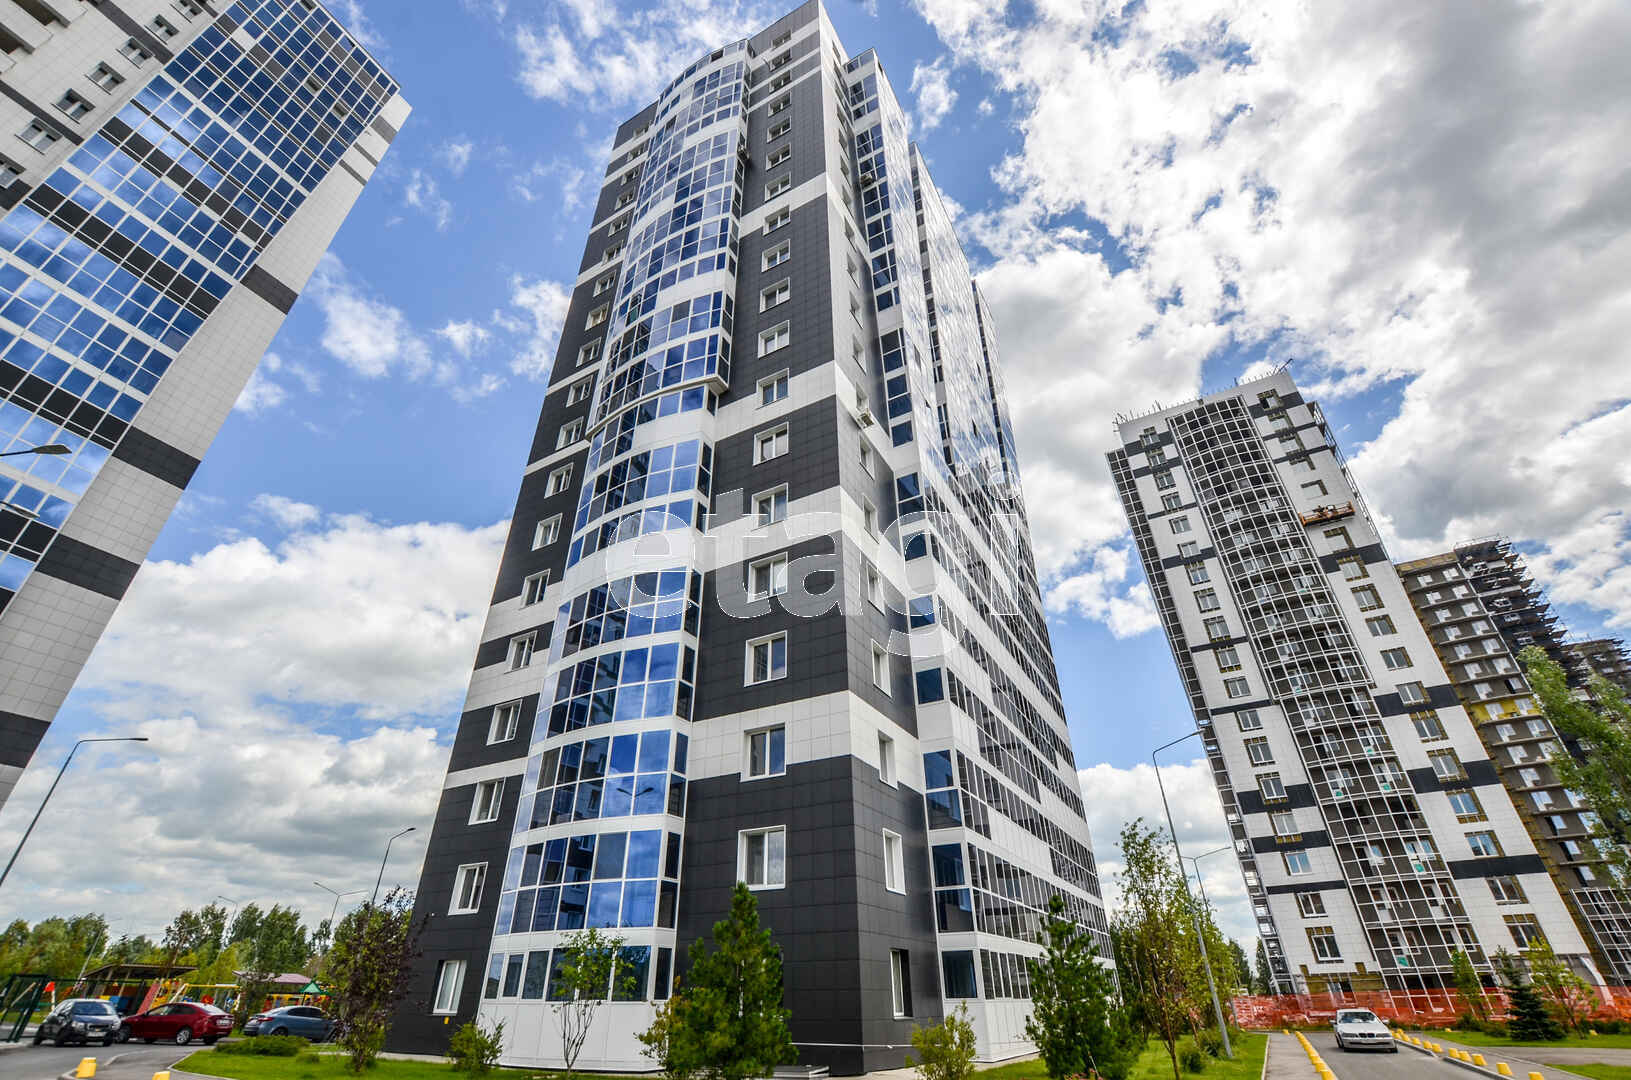 Компания «Этажи» — лидер рынка недвижимости в Казани